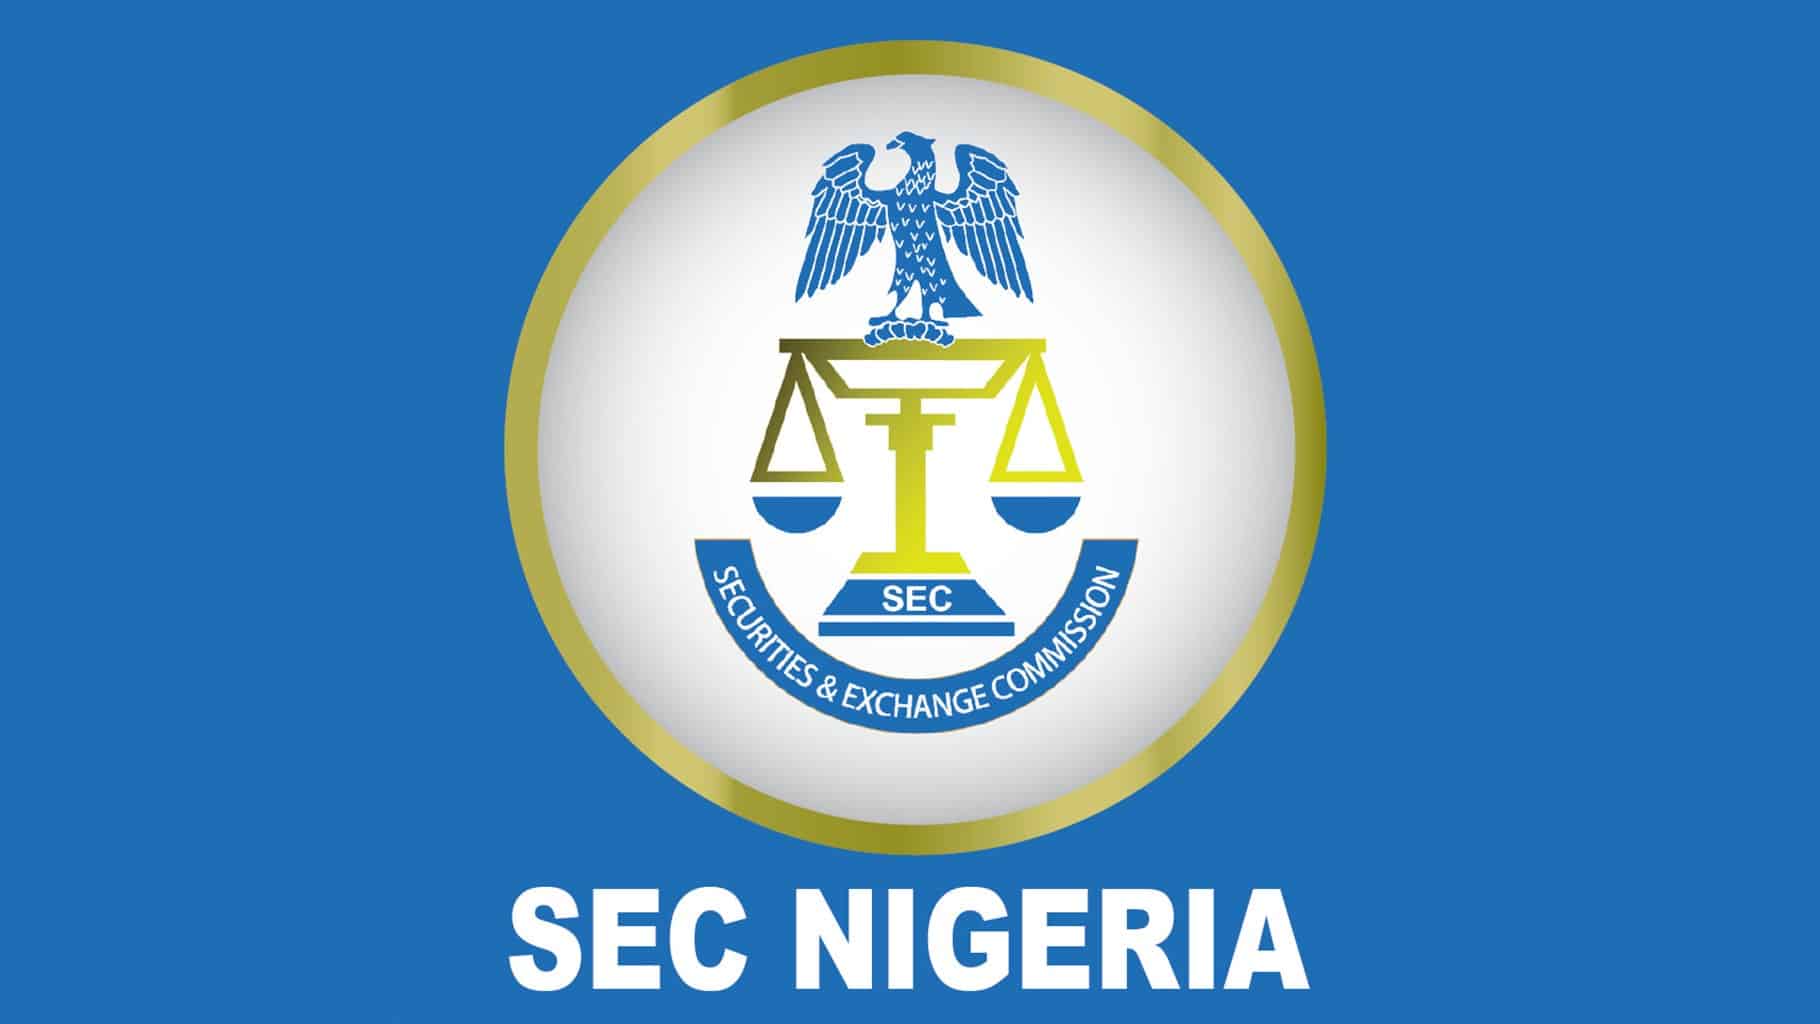 La SEC de Nigeria establece una unidad de Fintech para estudiar Bitcoin (BTC) y otras criptomonedas